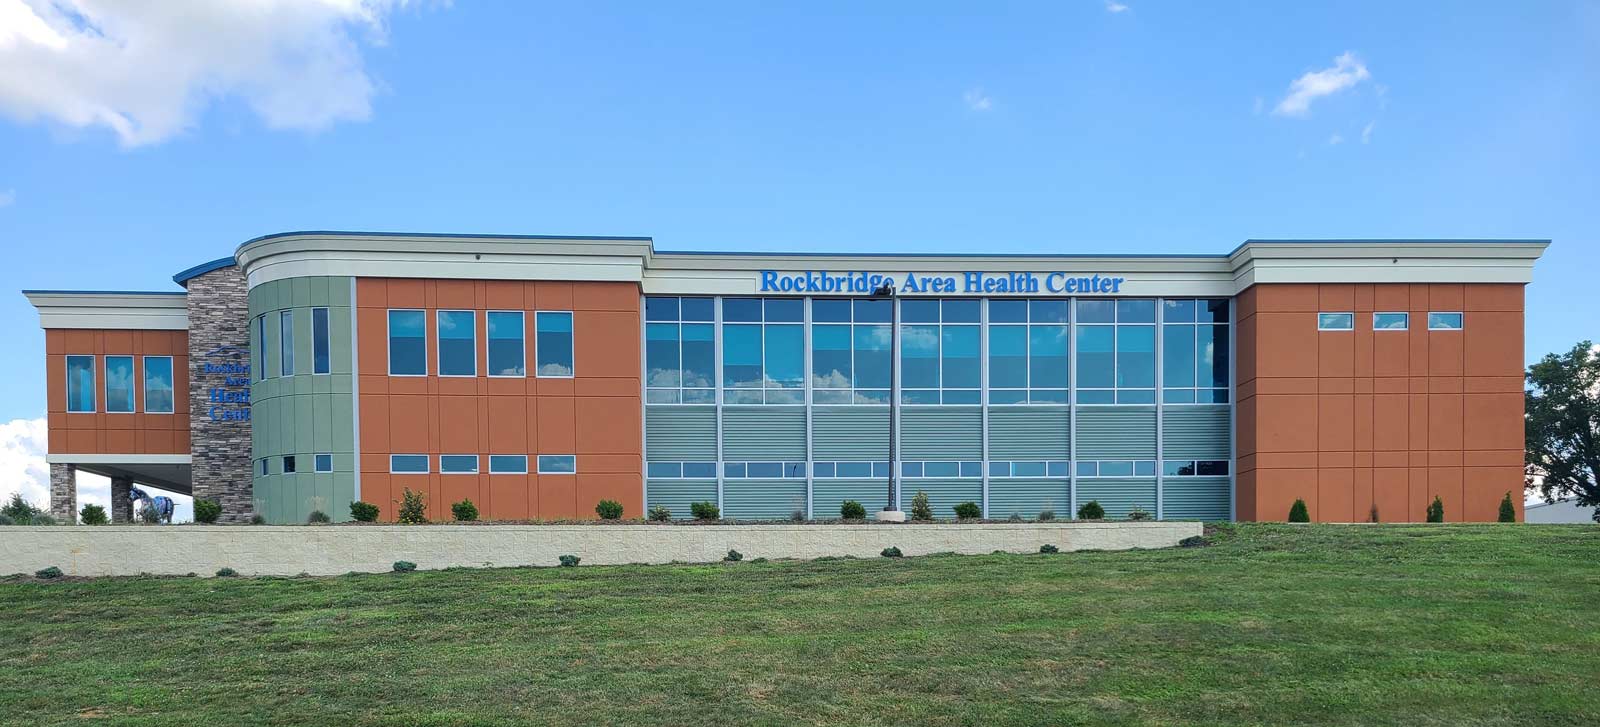 Rockbridge Area Health Center building